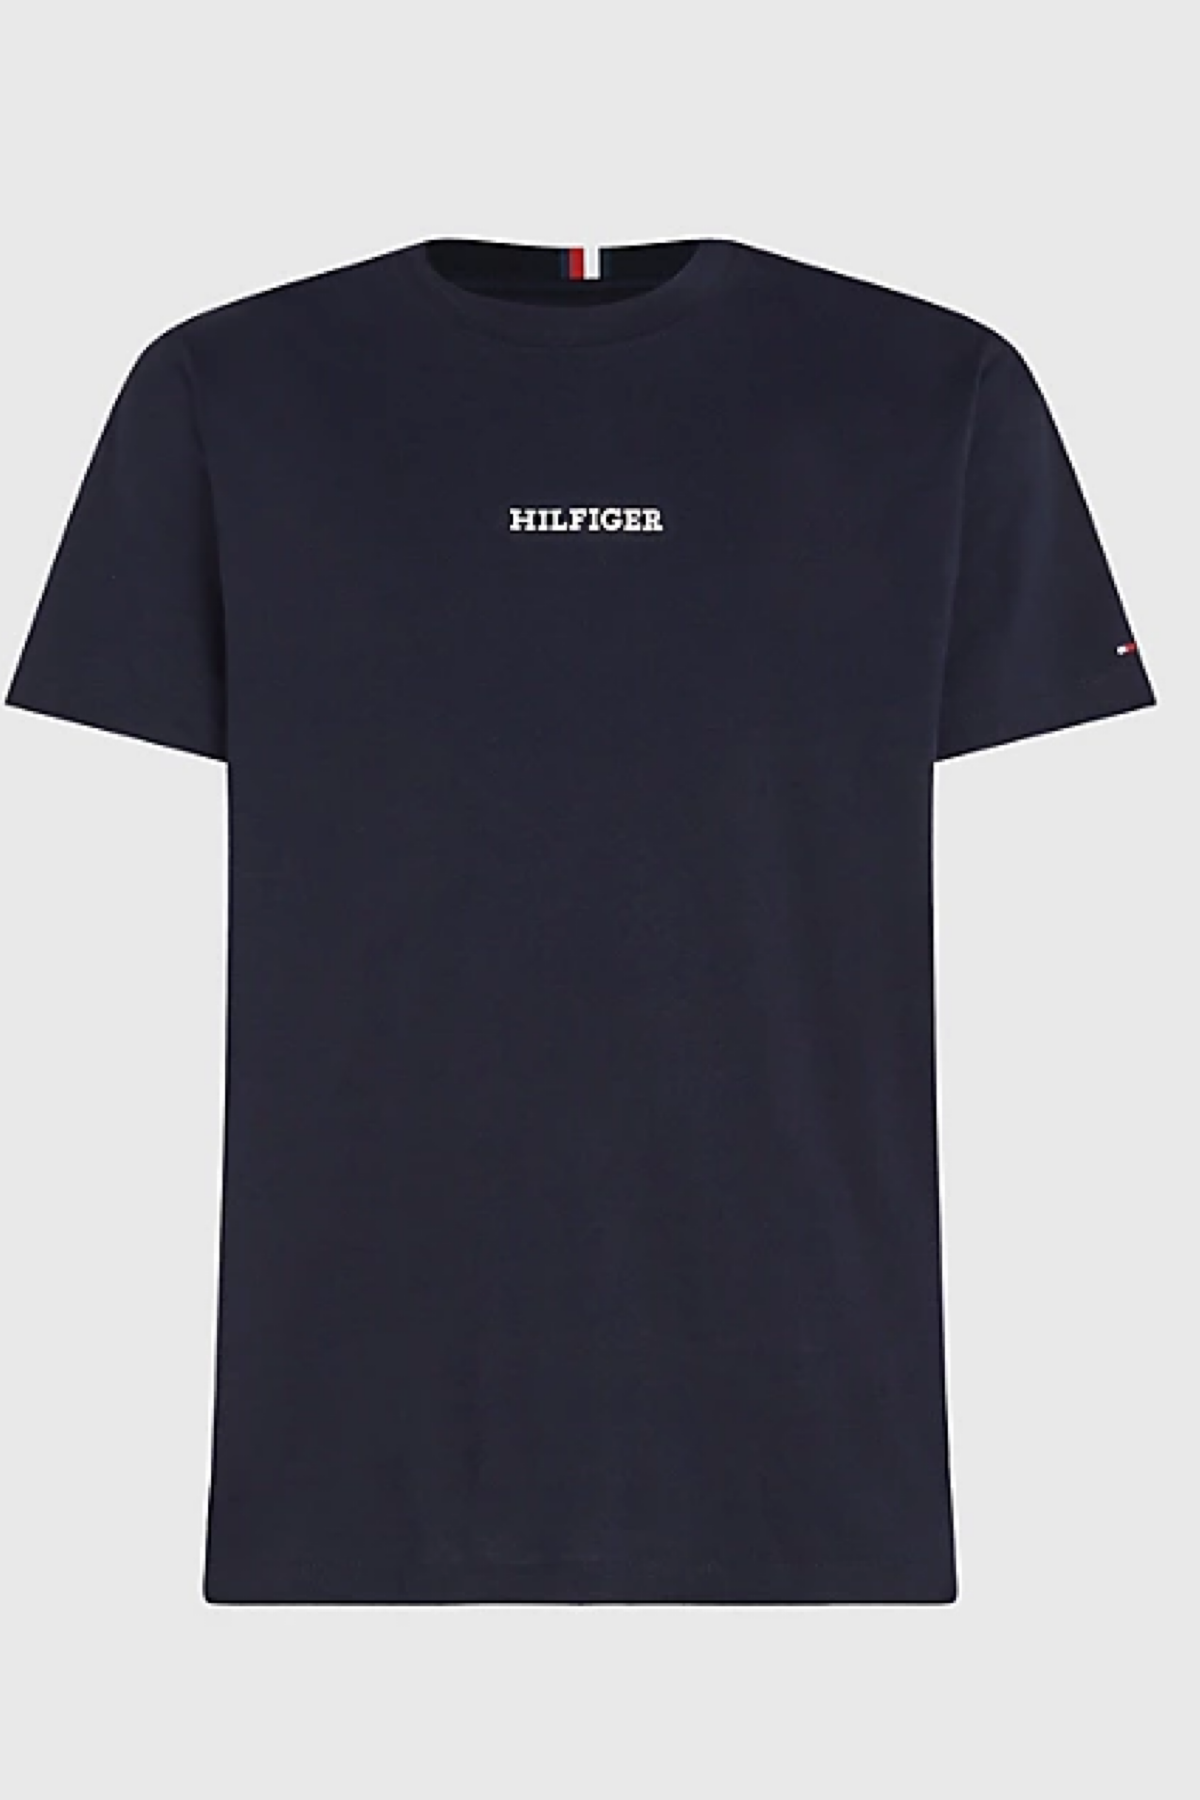 Tommy hilfiger t-shirt blu 31538